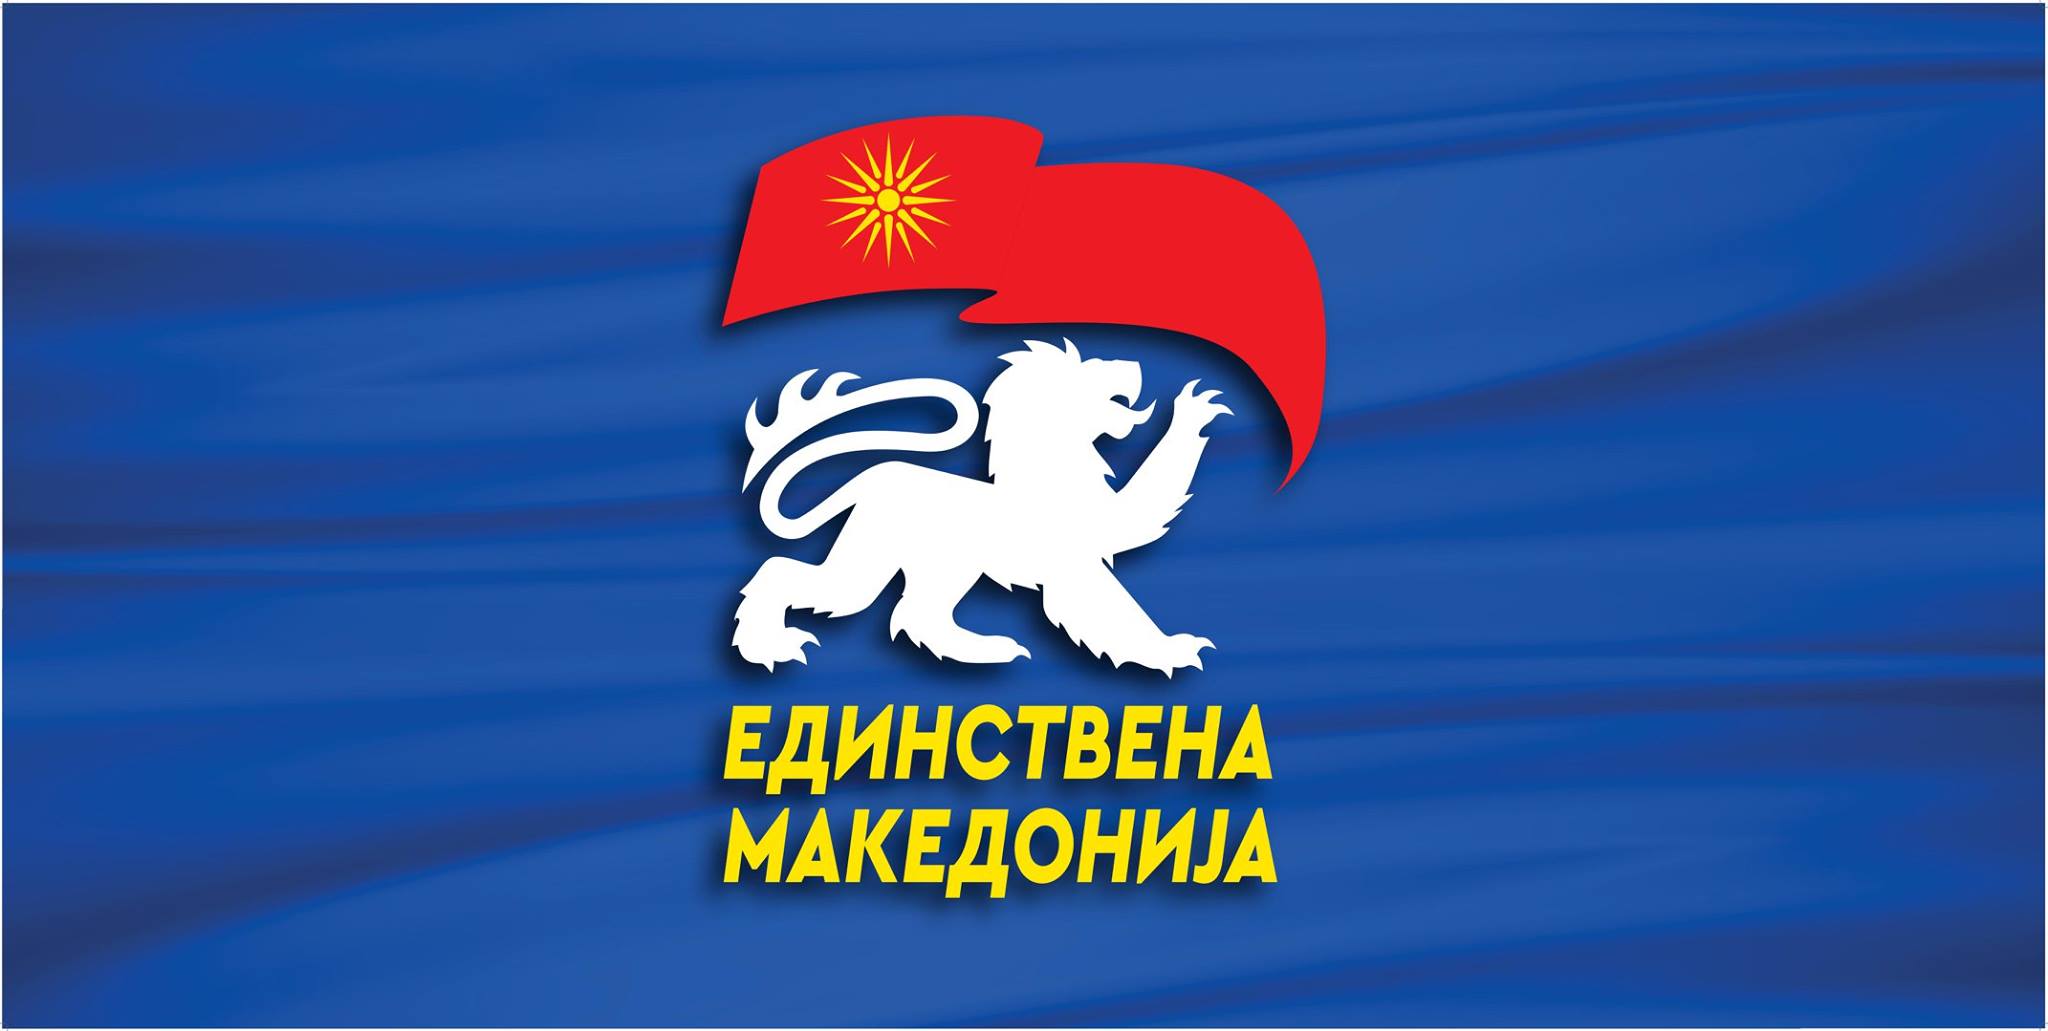 ИК на Единствена Македонија: Ќе има повторно кампања против пописот доколку власта не се вразуми и не овозможи попис според стандардите на ОН